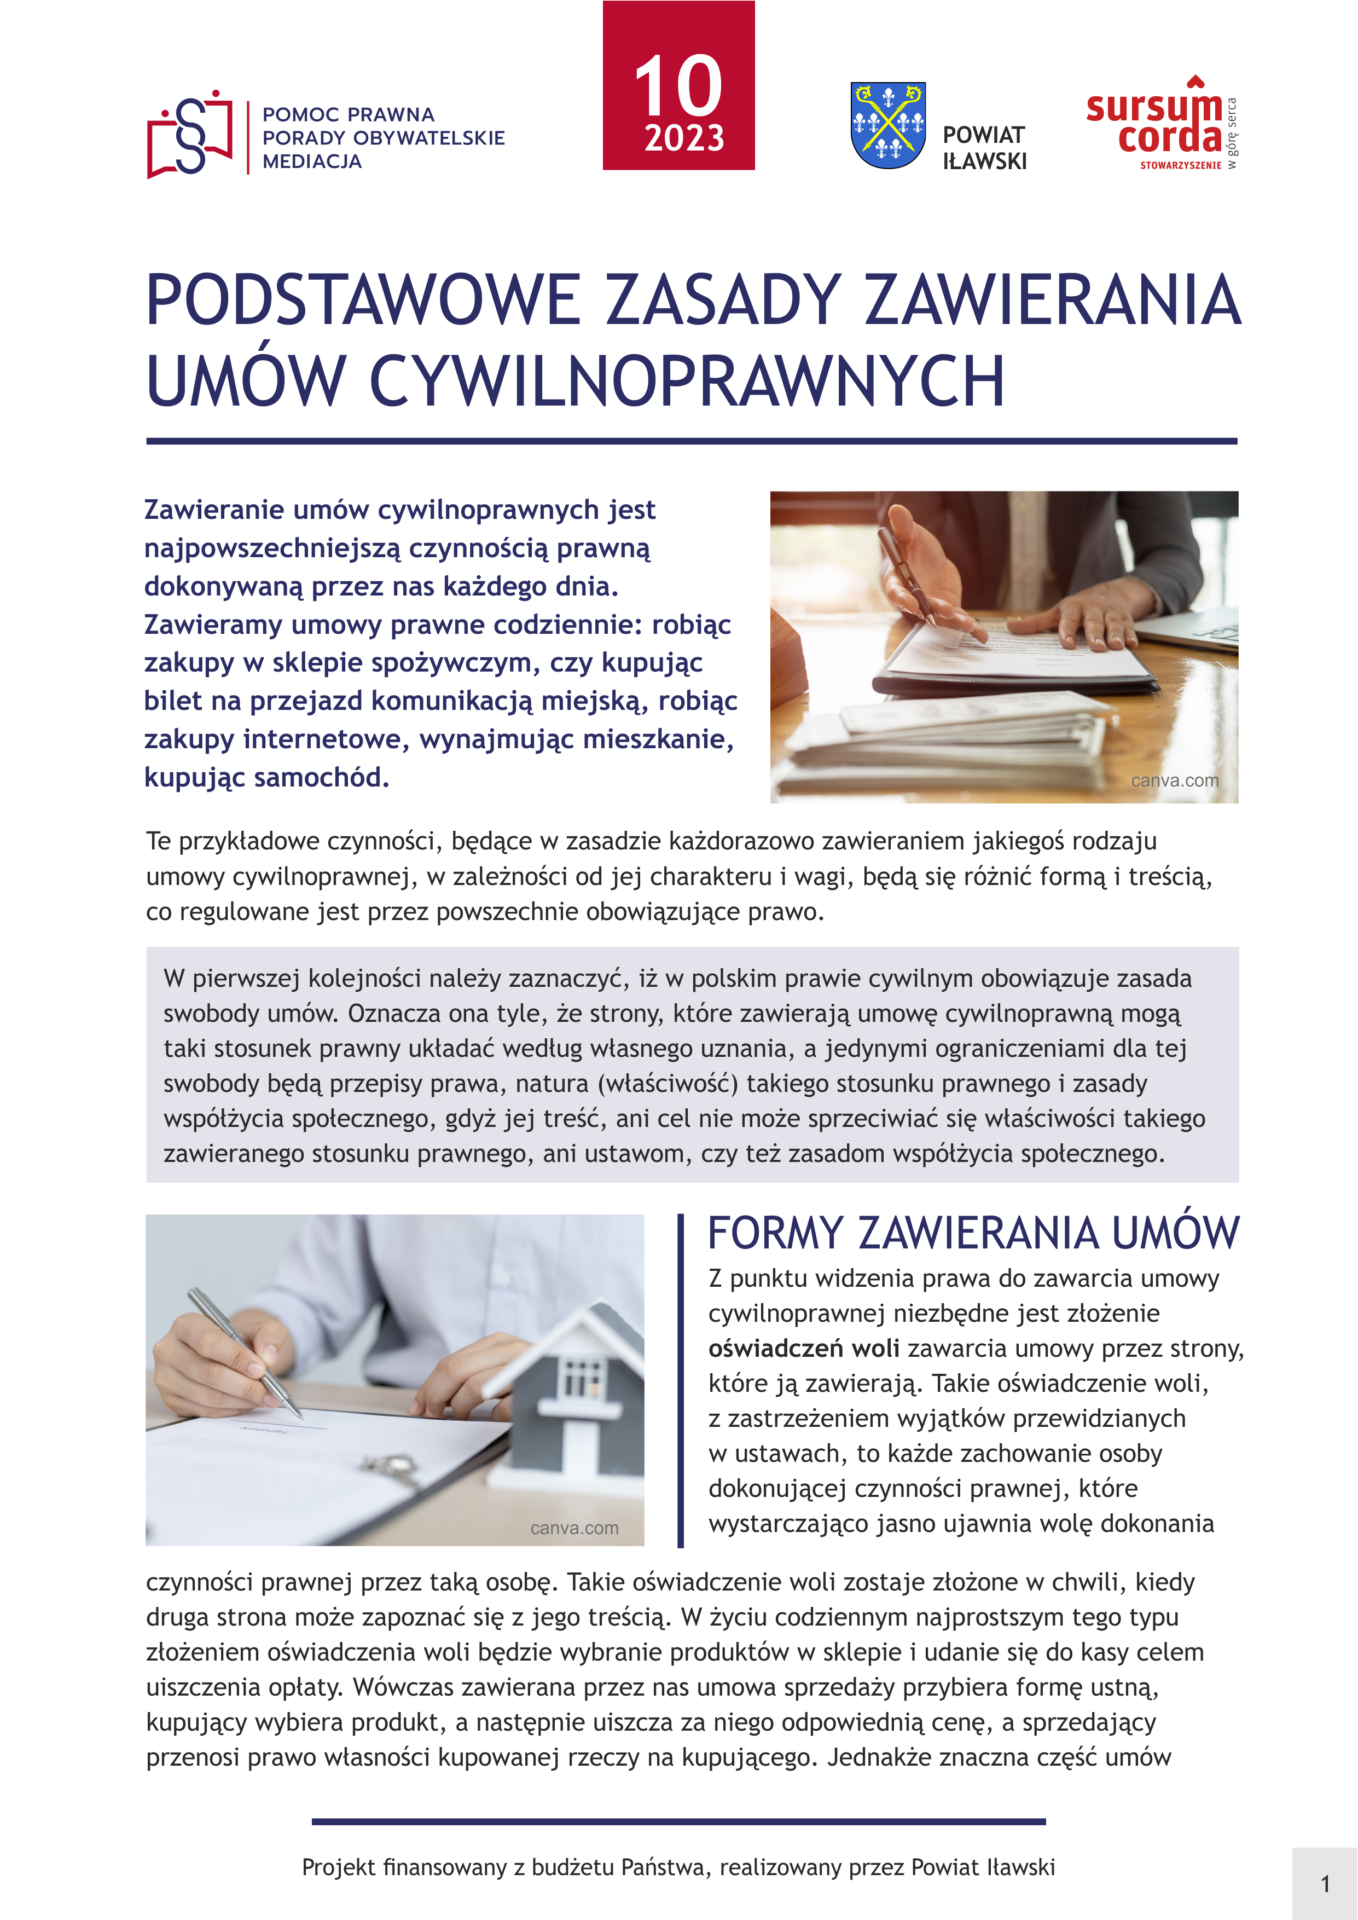 IŁAWSKI - broszury prawne 2023 - październik